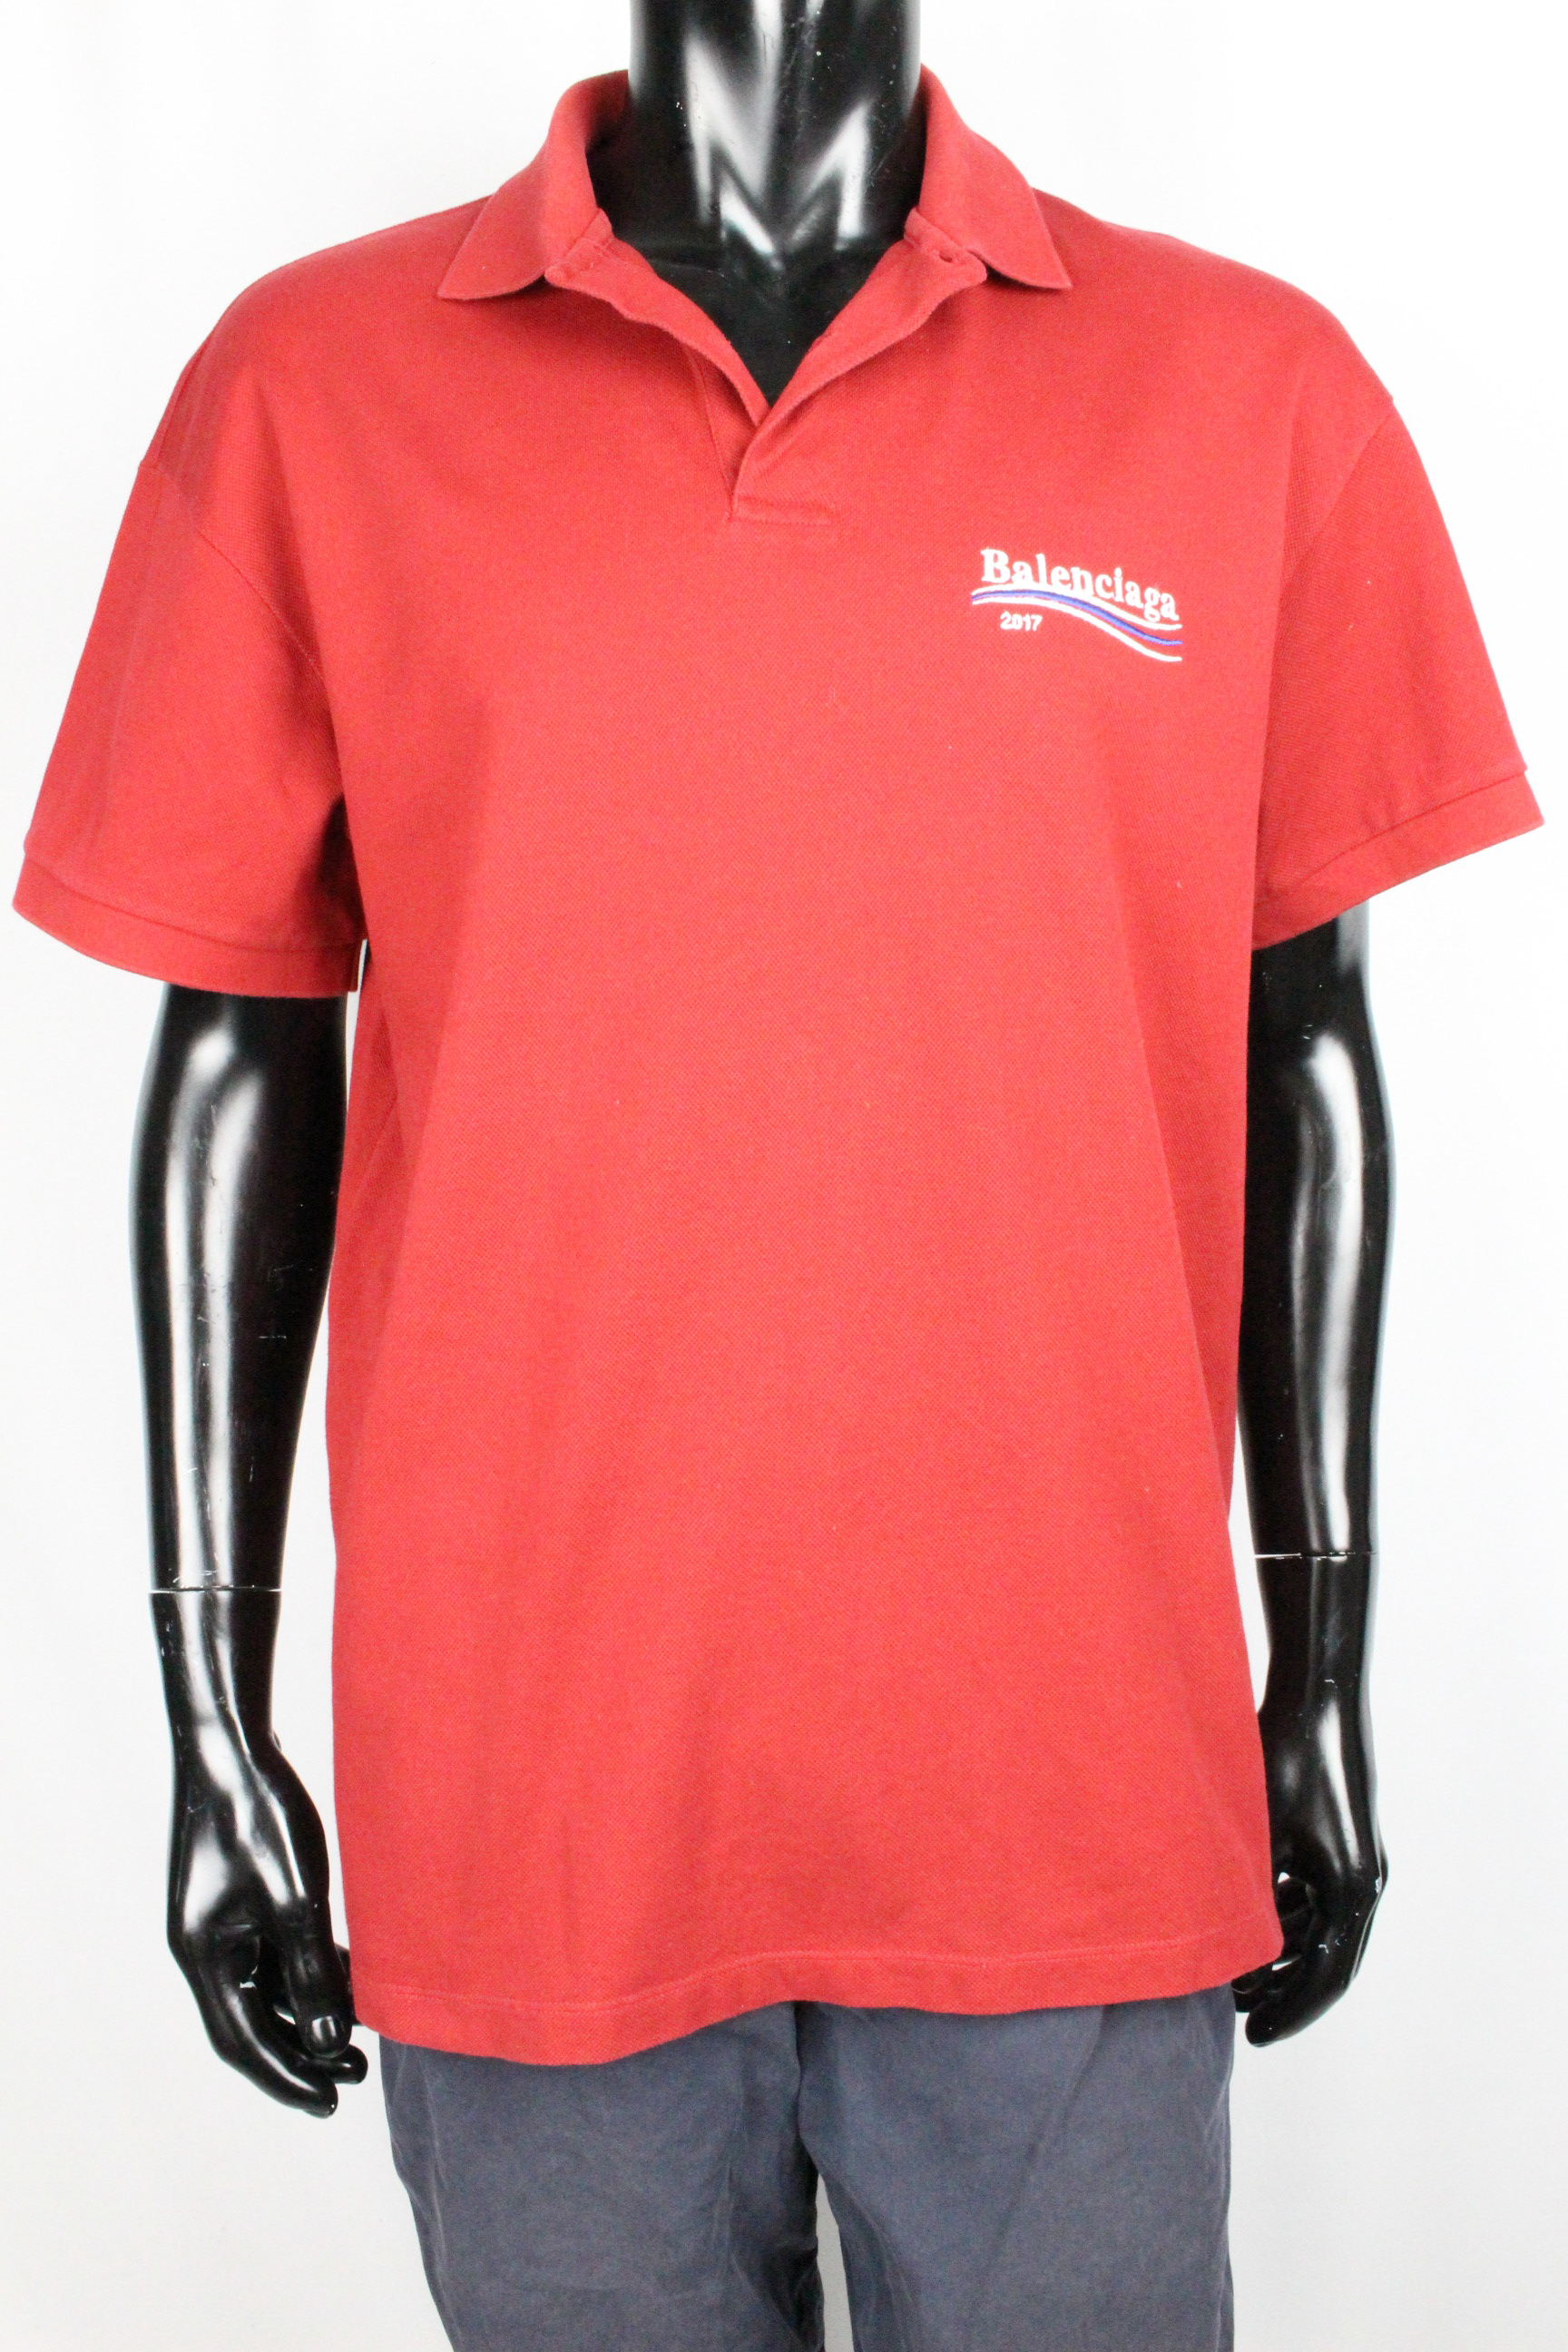 バレンシアガ ［ BALENCIAGA ] ロゴ ポロシャツ レッド 赤系 半袖 SIZE[S] メンズ トップス カットソー